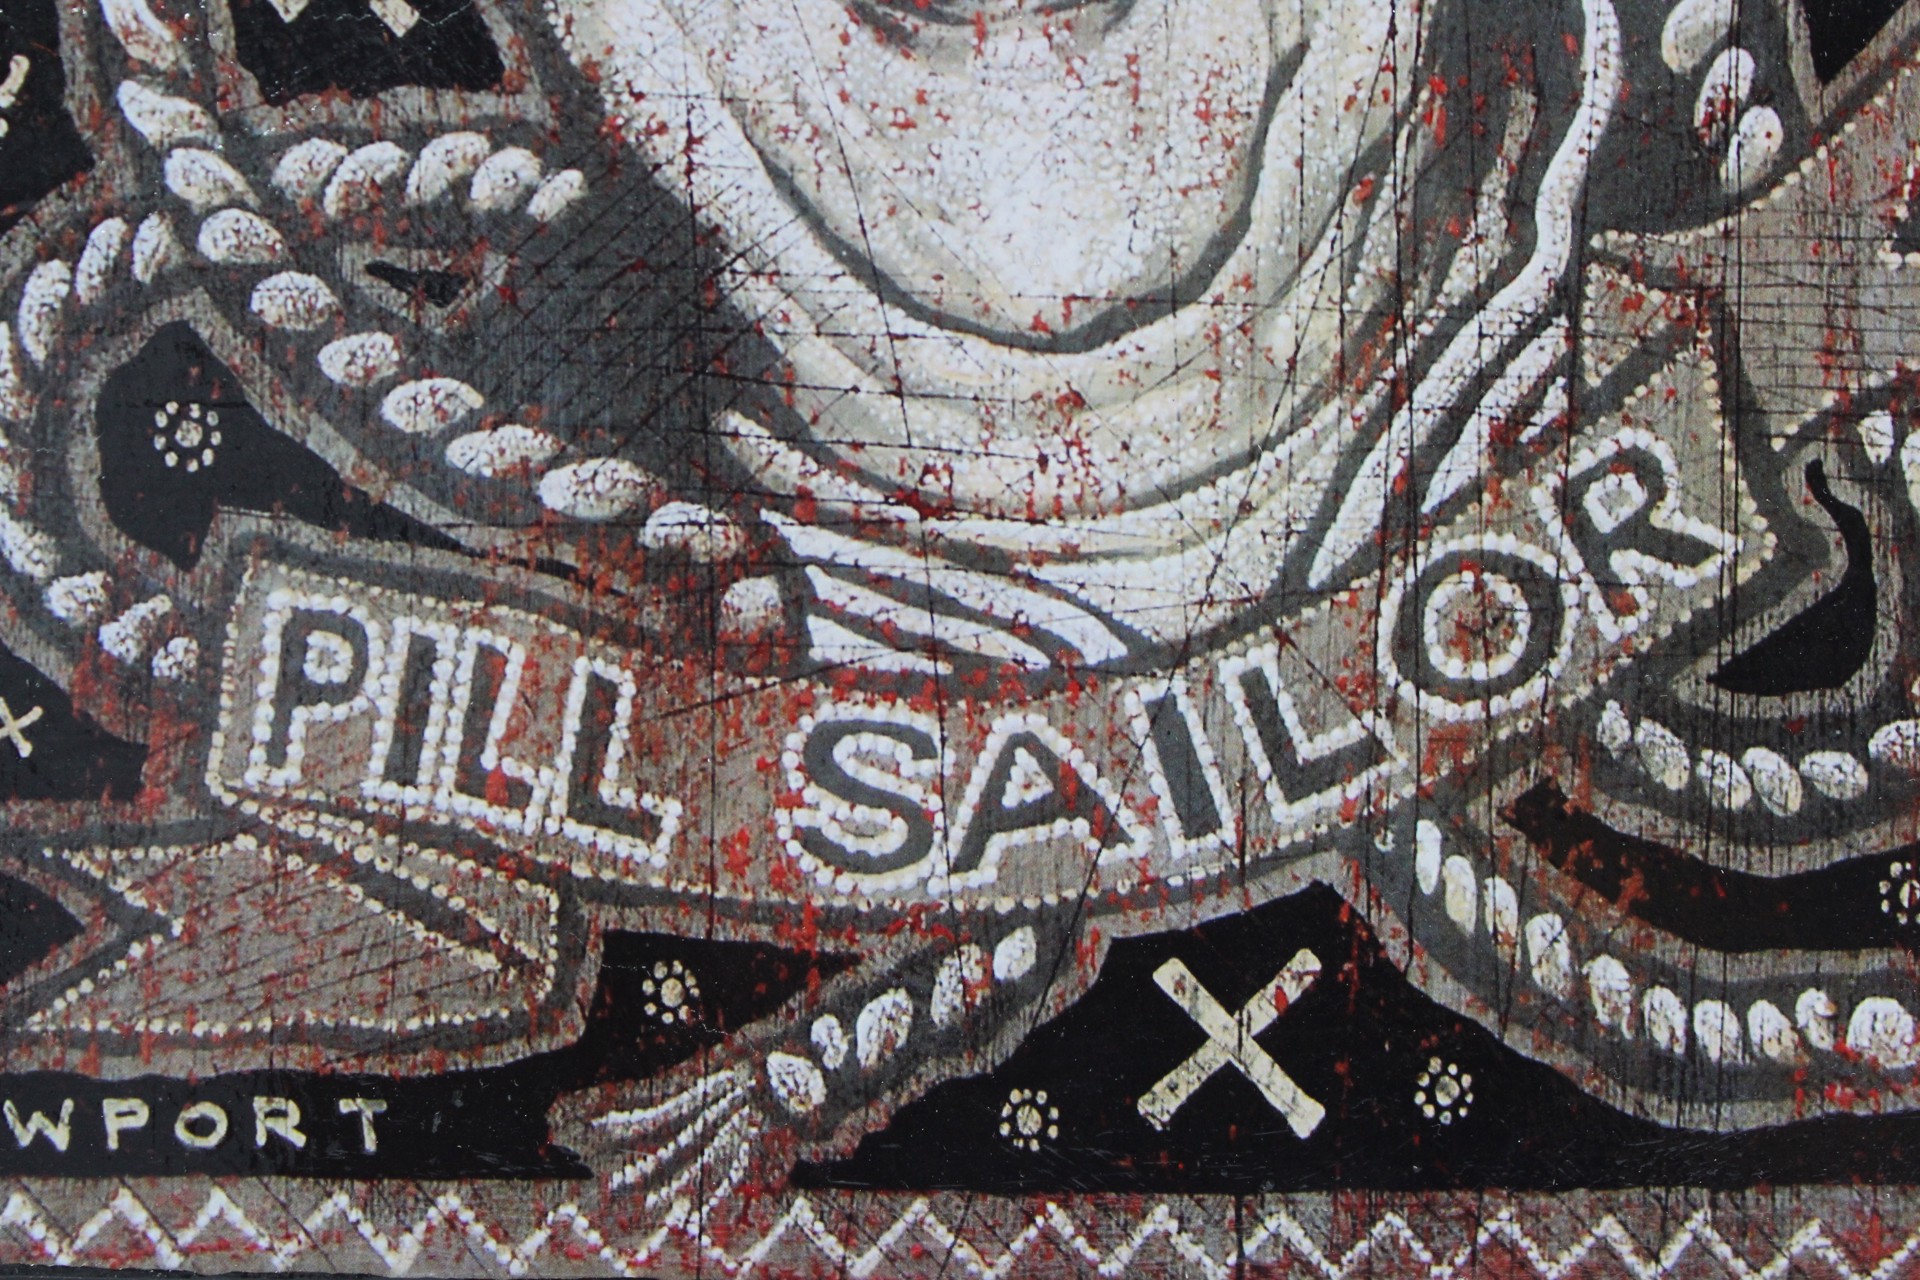 Pill Sailor (A.P.) by Jon Langford